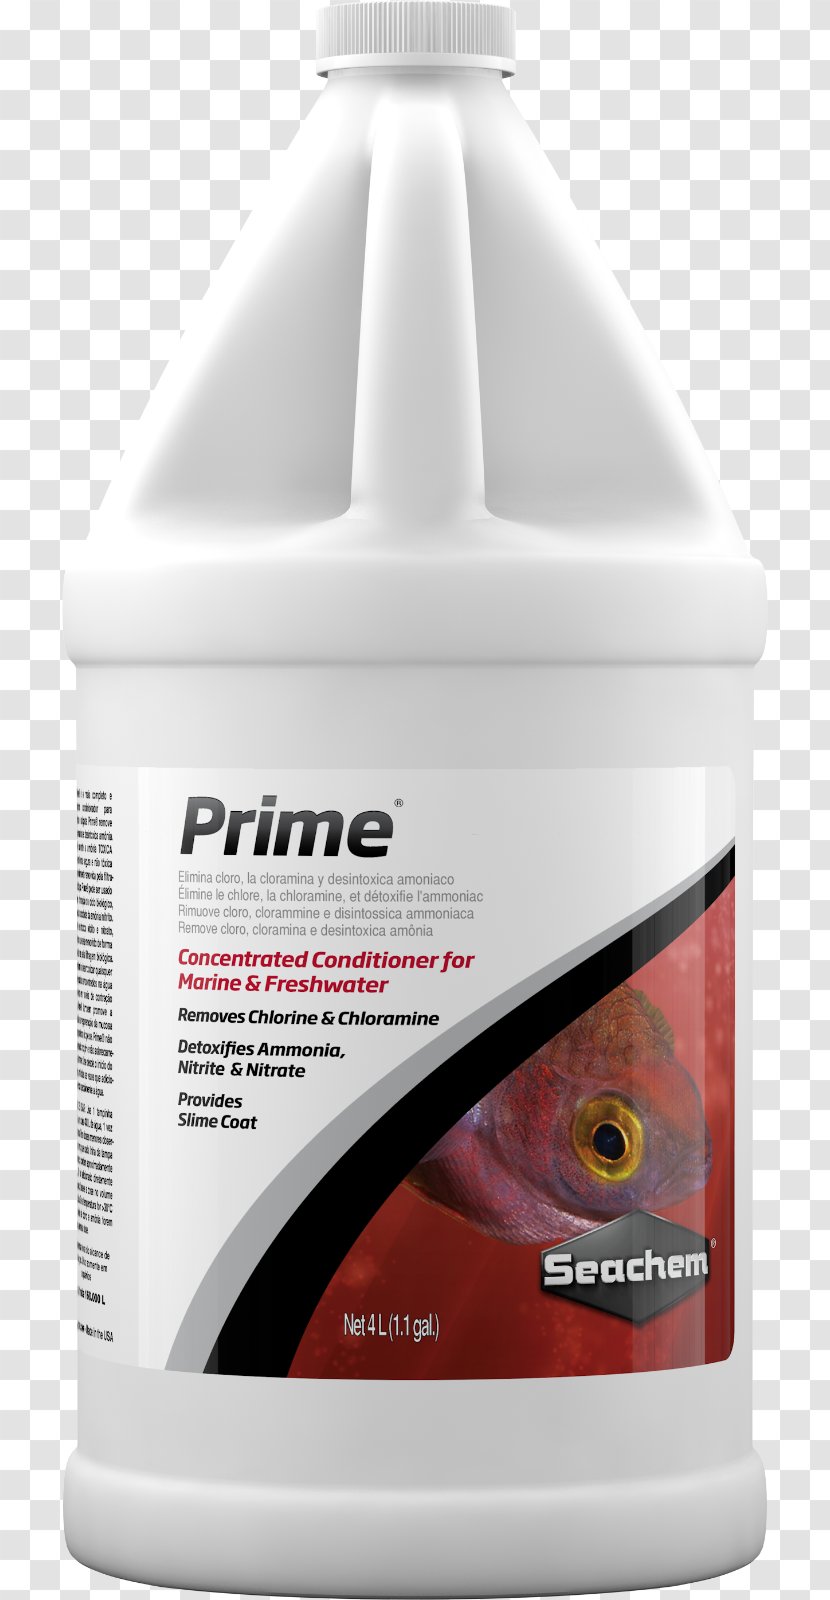 Amazon.com Seachem Laboratories, Inc. Milliliter Chloramine - Concentration Transparent PNG